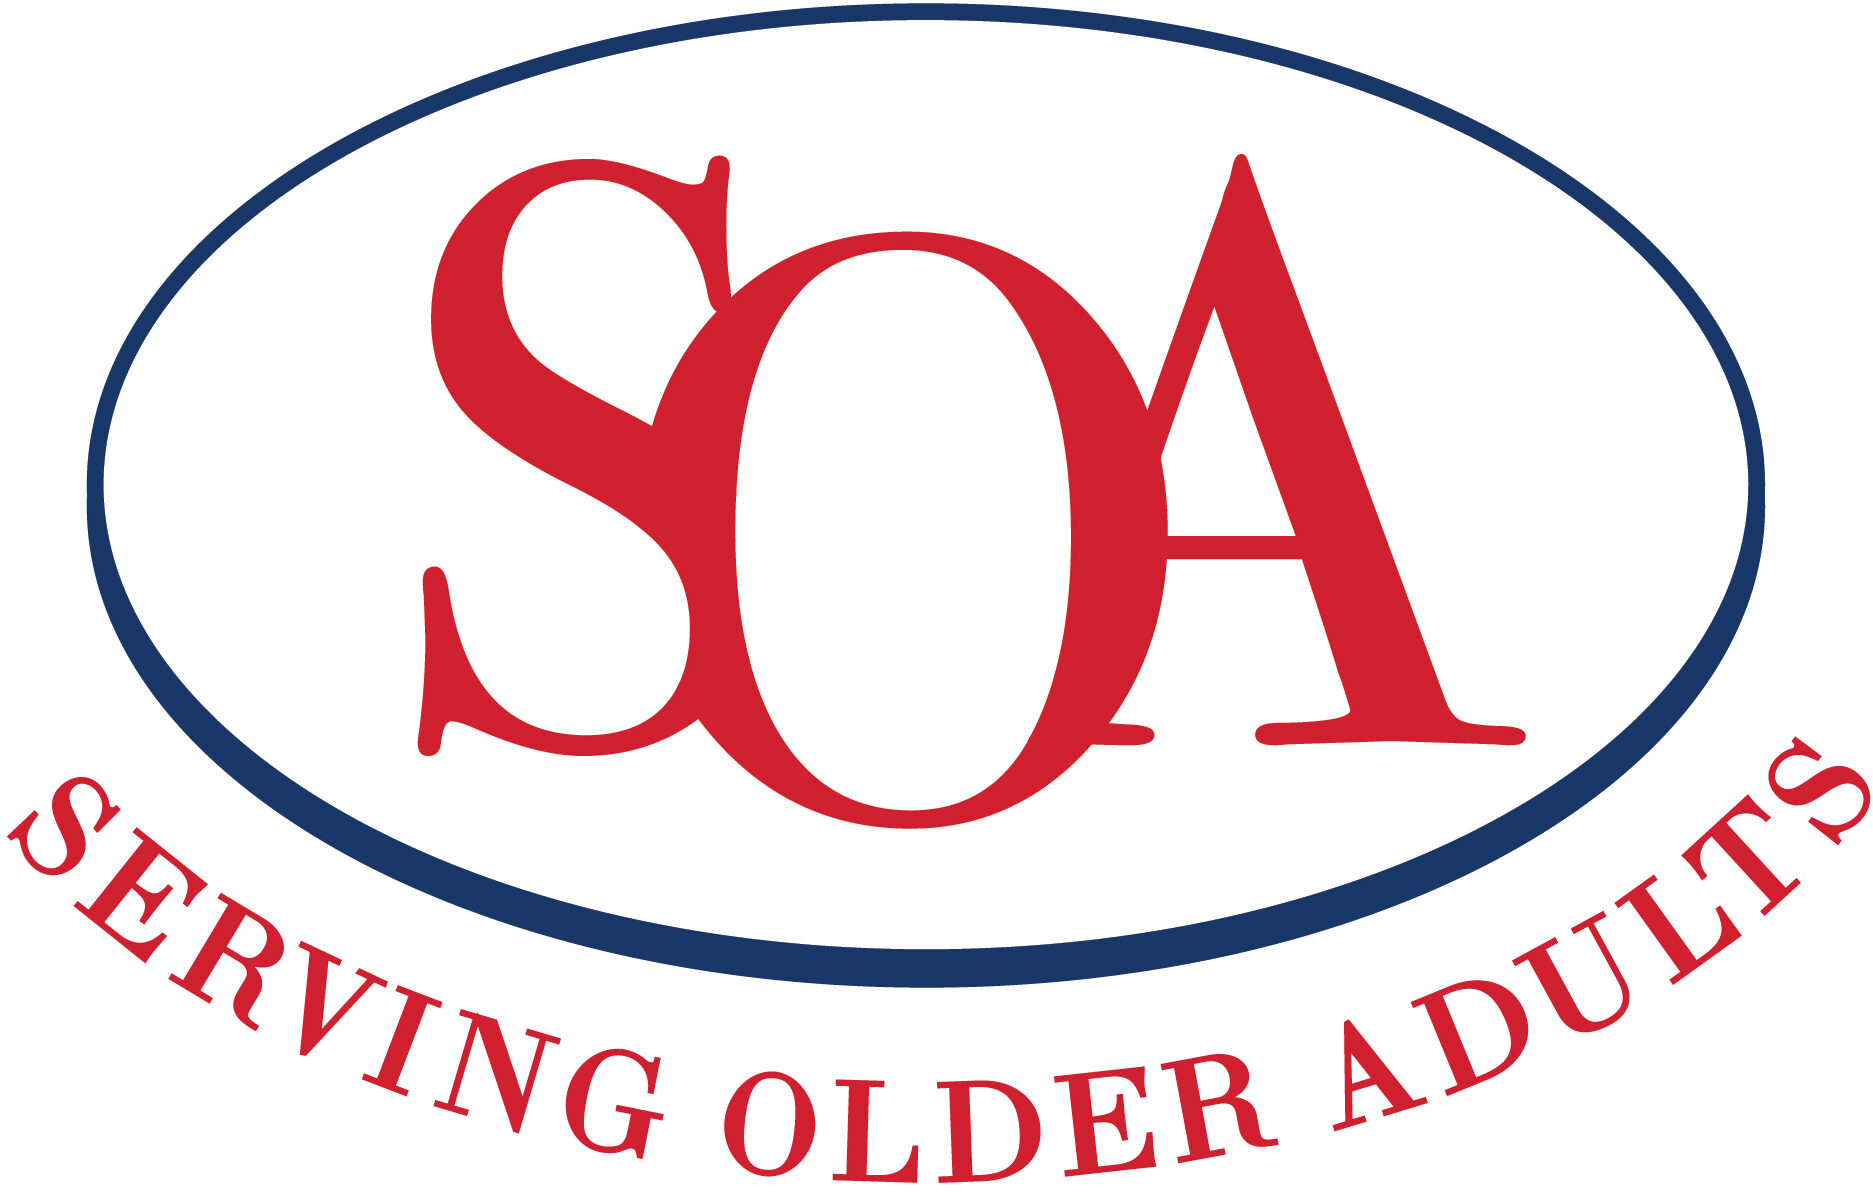 Serving Older Adults